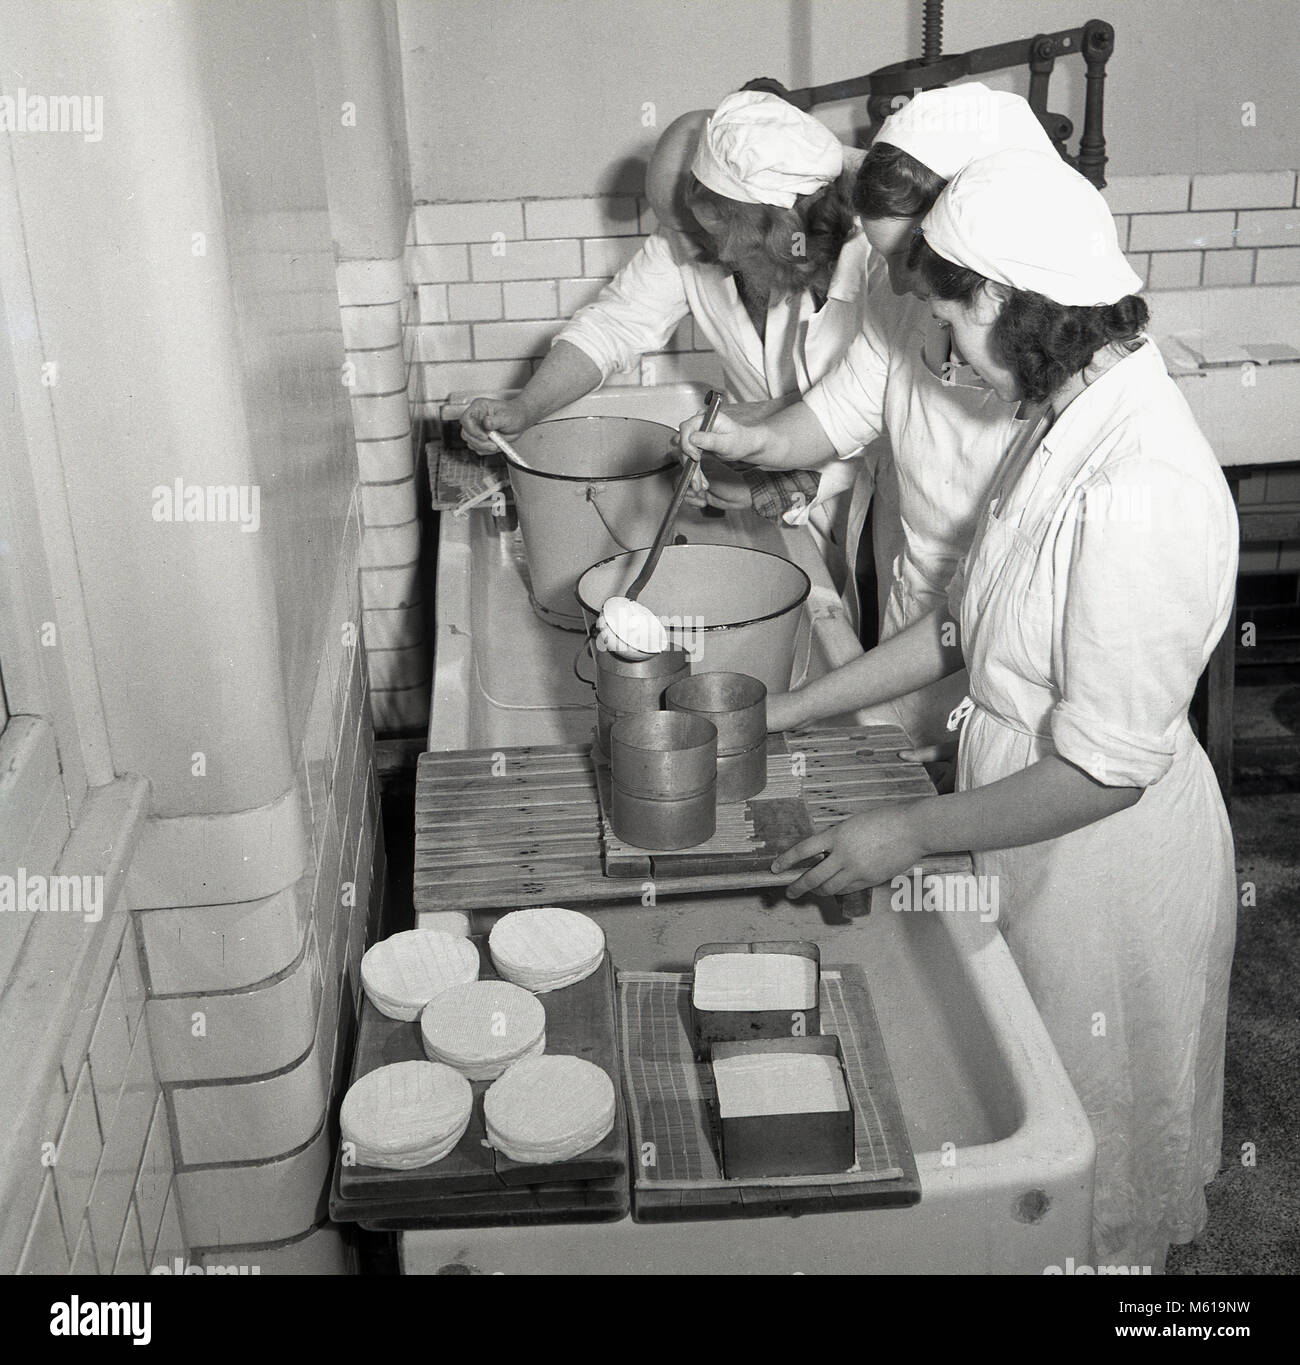 1950er Jahre, historische Bild zeigt drei Junge weibliche landwirtschaftlichen Studenten in einer Molkerei Käserei. Wie praktische Erfahrung, neue Fähigkeiten zu erlernen und nutzen Sie die Chancen in der Landwirtschaft nach dem zweiten Weltkrieg war Großbritannien aktiv gefördert, da es eine Notwendigkeit und eine große Nachfrage nach mehr home-grown food. Stockfoto